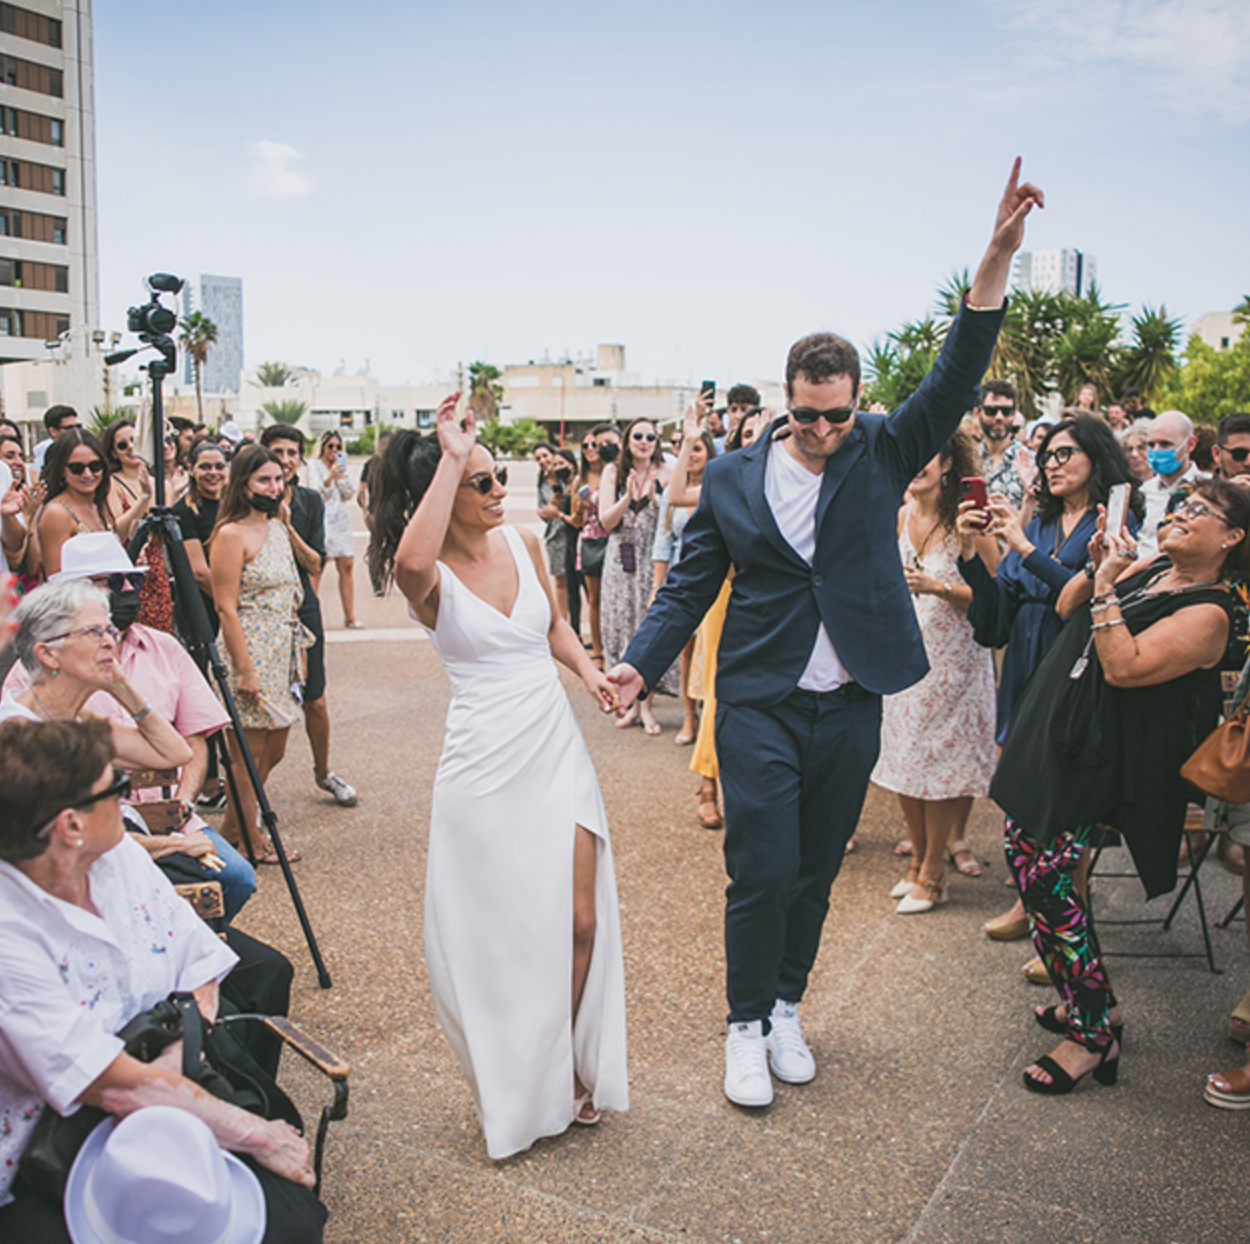 חתונה בשבת חתונה חילונית חתונה אחרת חתונה לא כשרה חתונה בתל אביב מסיבת חברים